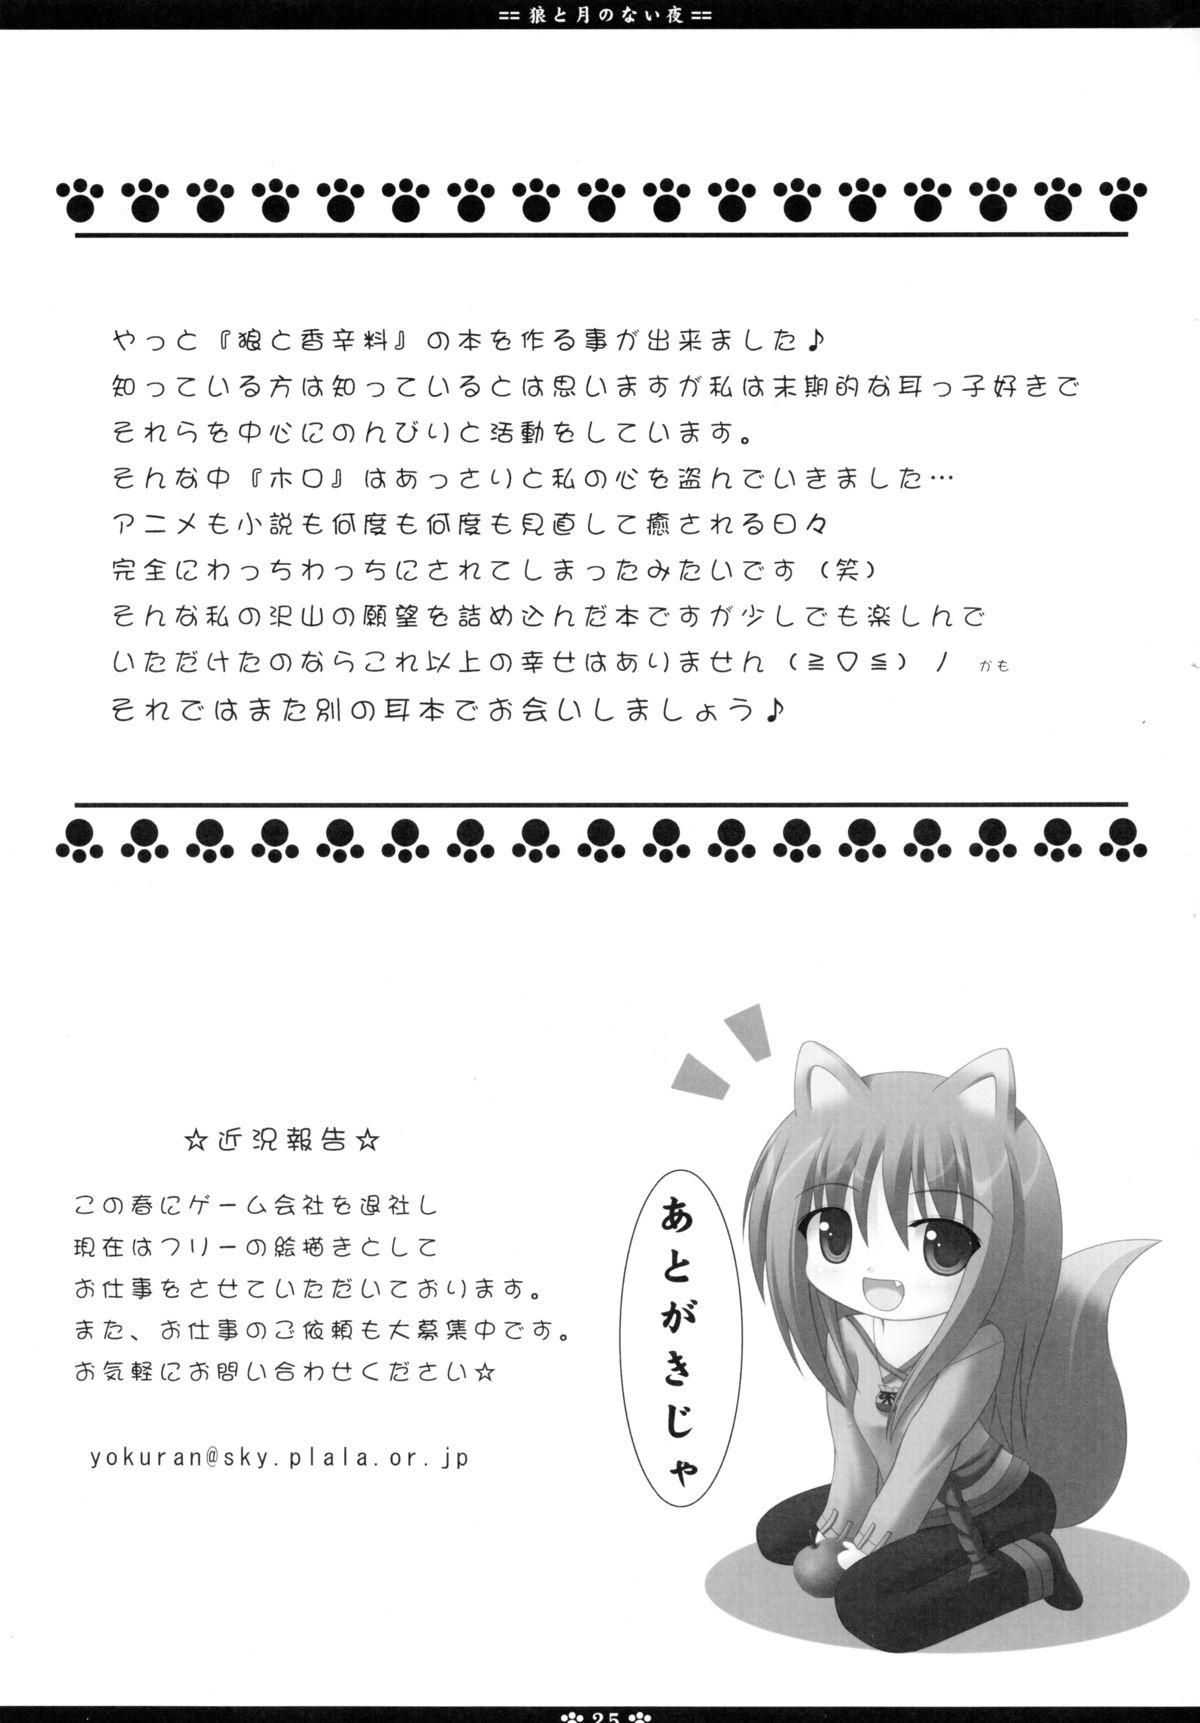 Sologirl Ookami to Tsuki no Nai Yoru - Spice and wolf Morena - Page 25